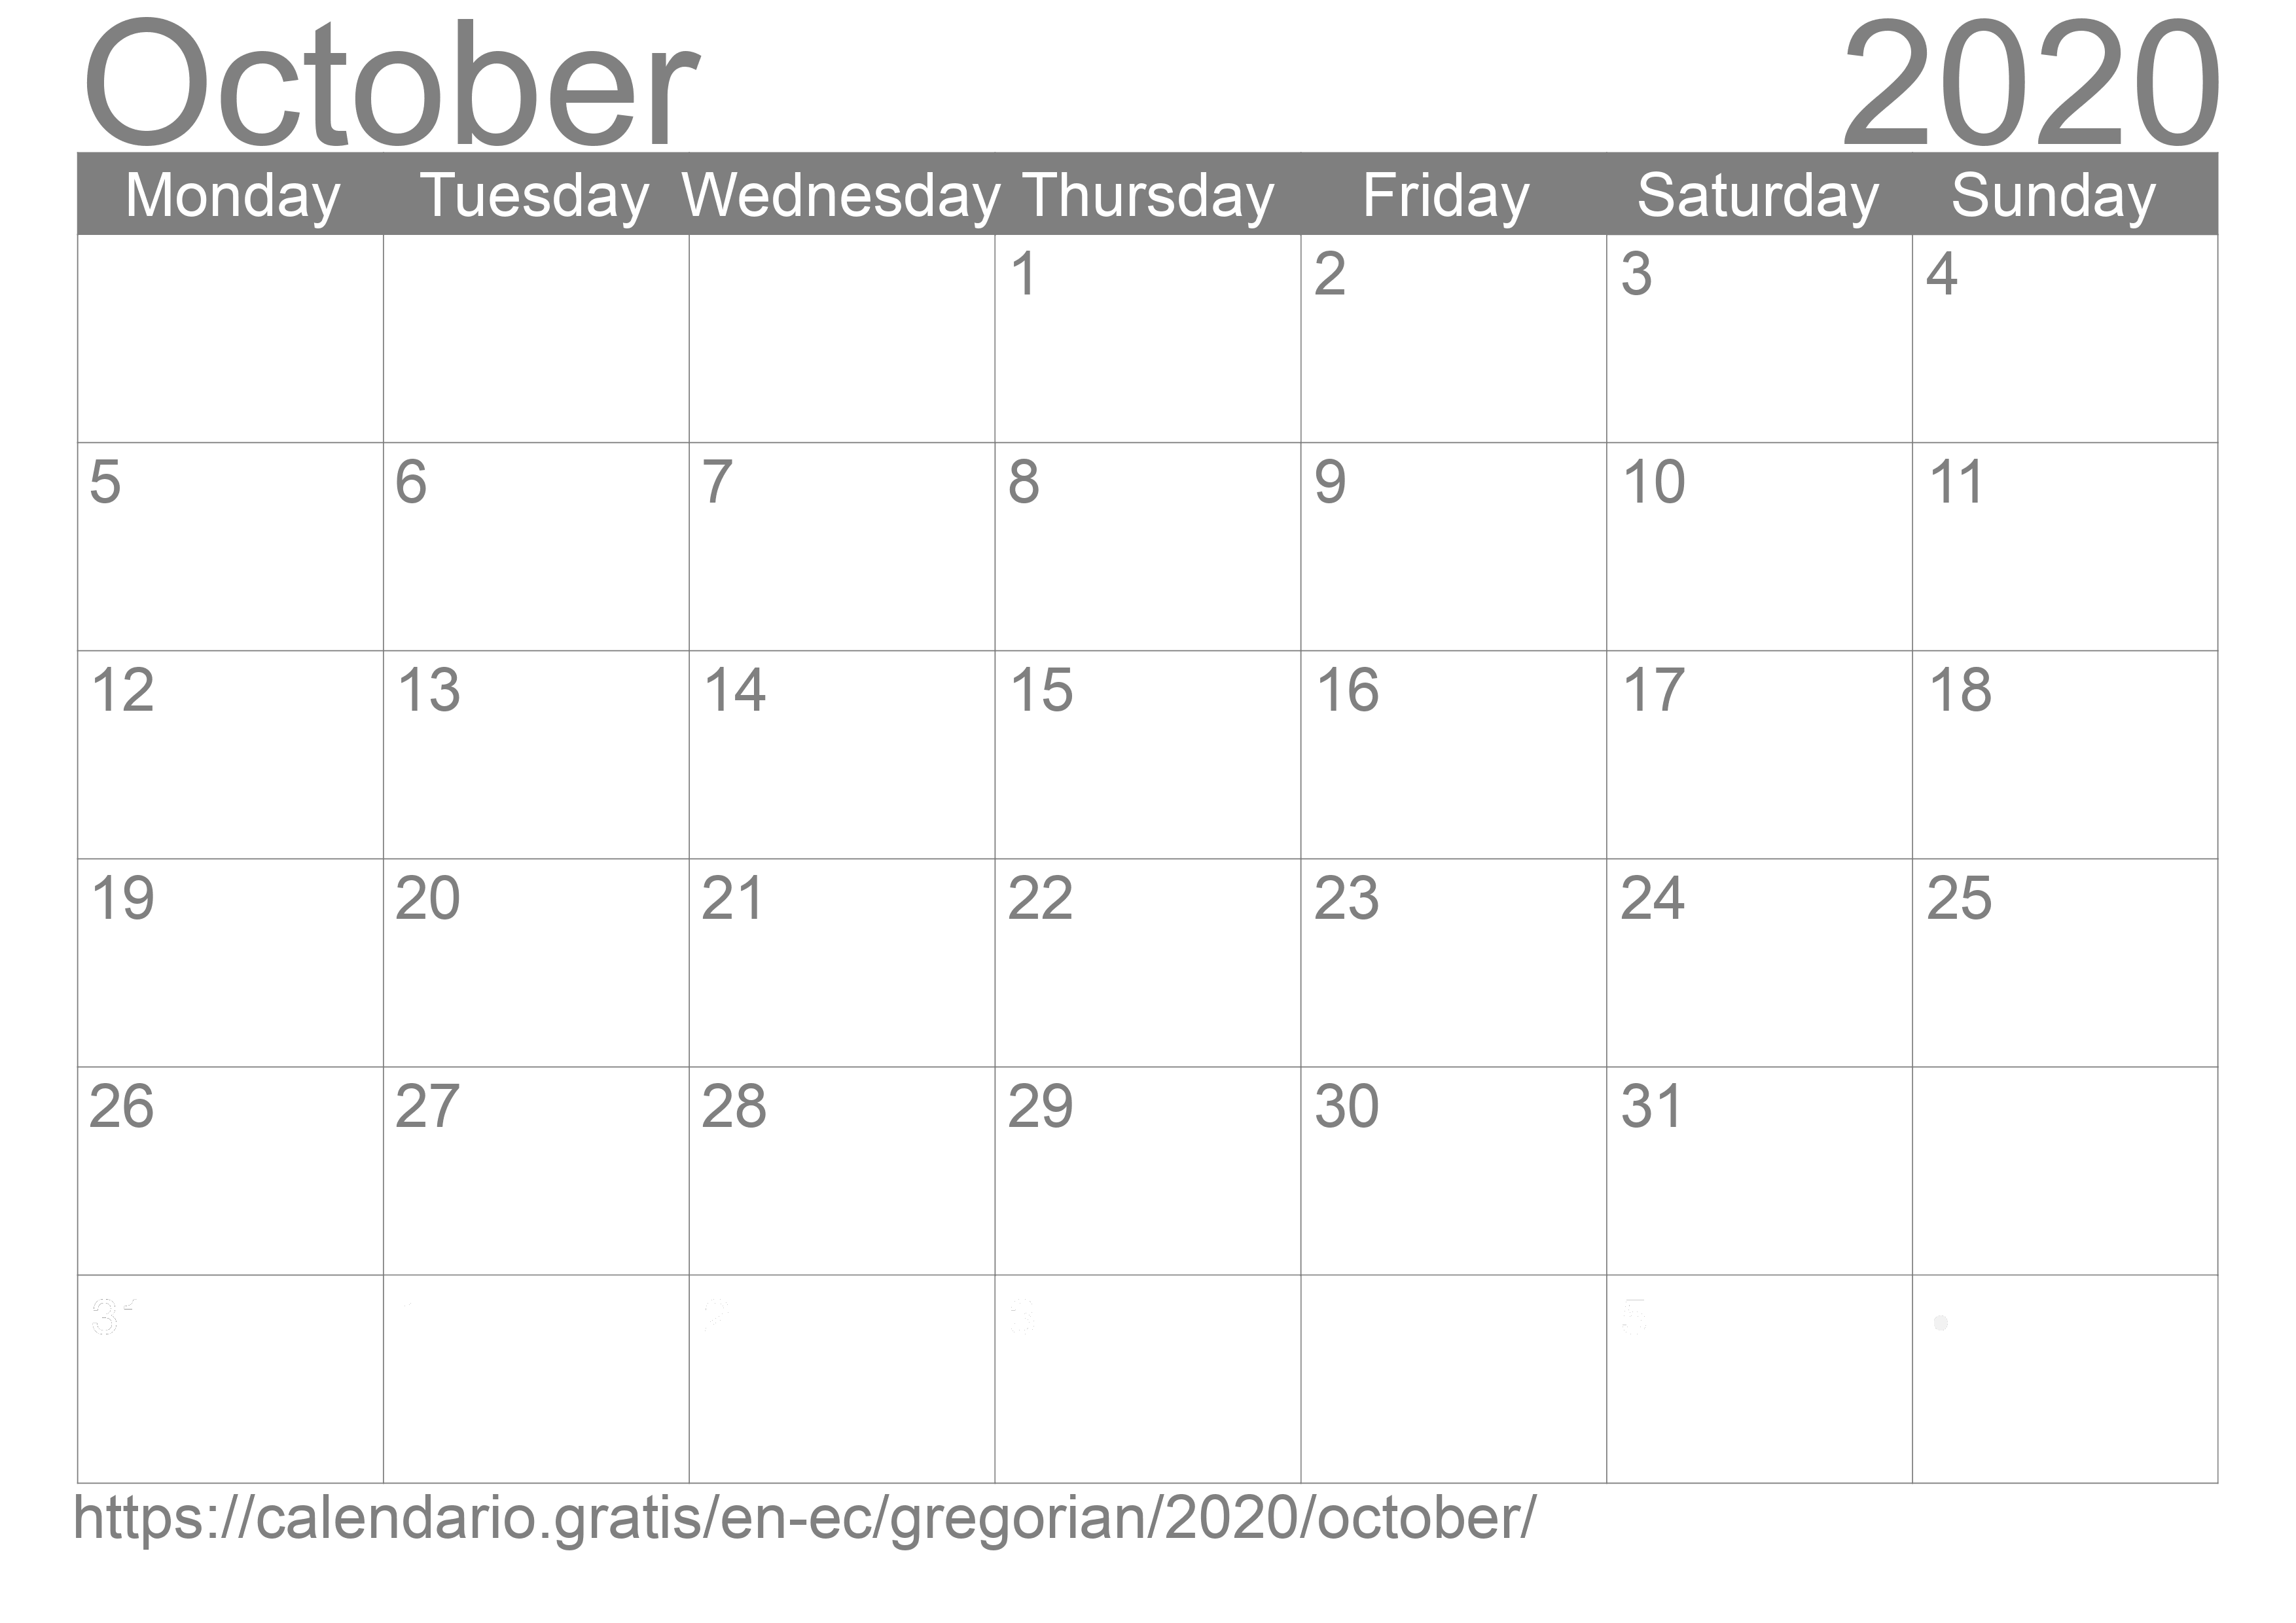 Calendar October 2020 to print